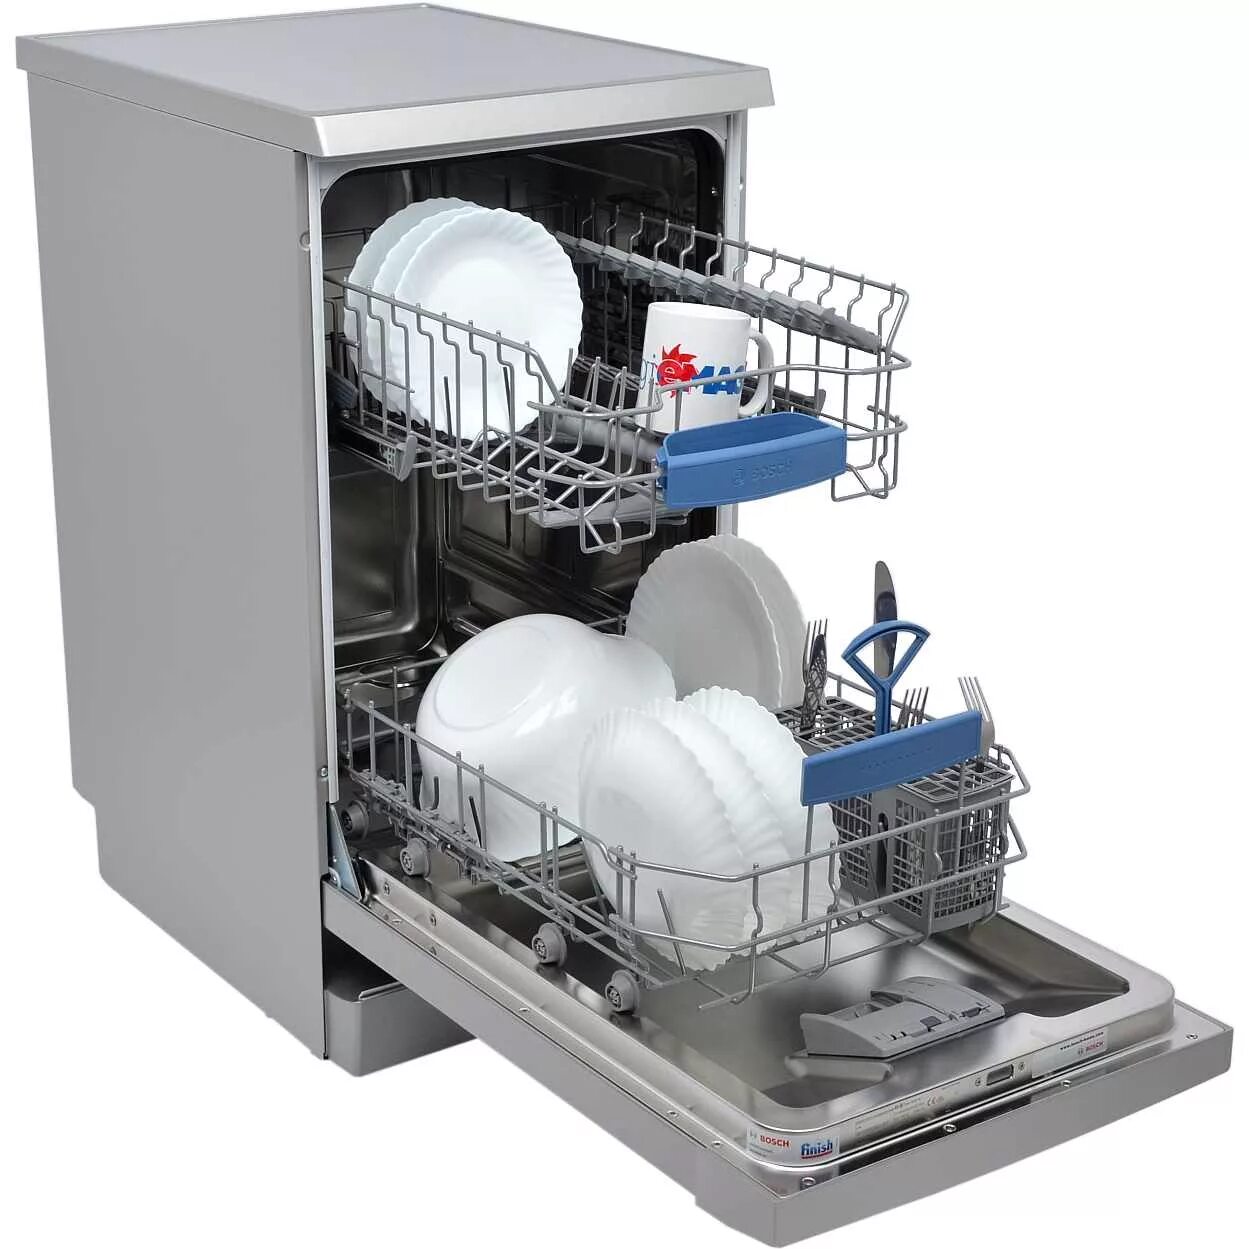 Посудомоечная машина Bosch sps2ikw1br. Посудомоечная машина Neff s855hmx50r. ПММ бош sps53. Посудомоечная машина Bosch spv6hmx1mr. Где можно купить посудомоечная